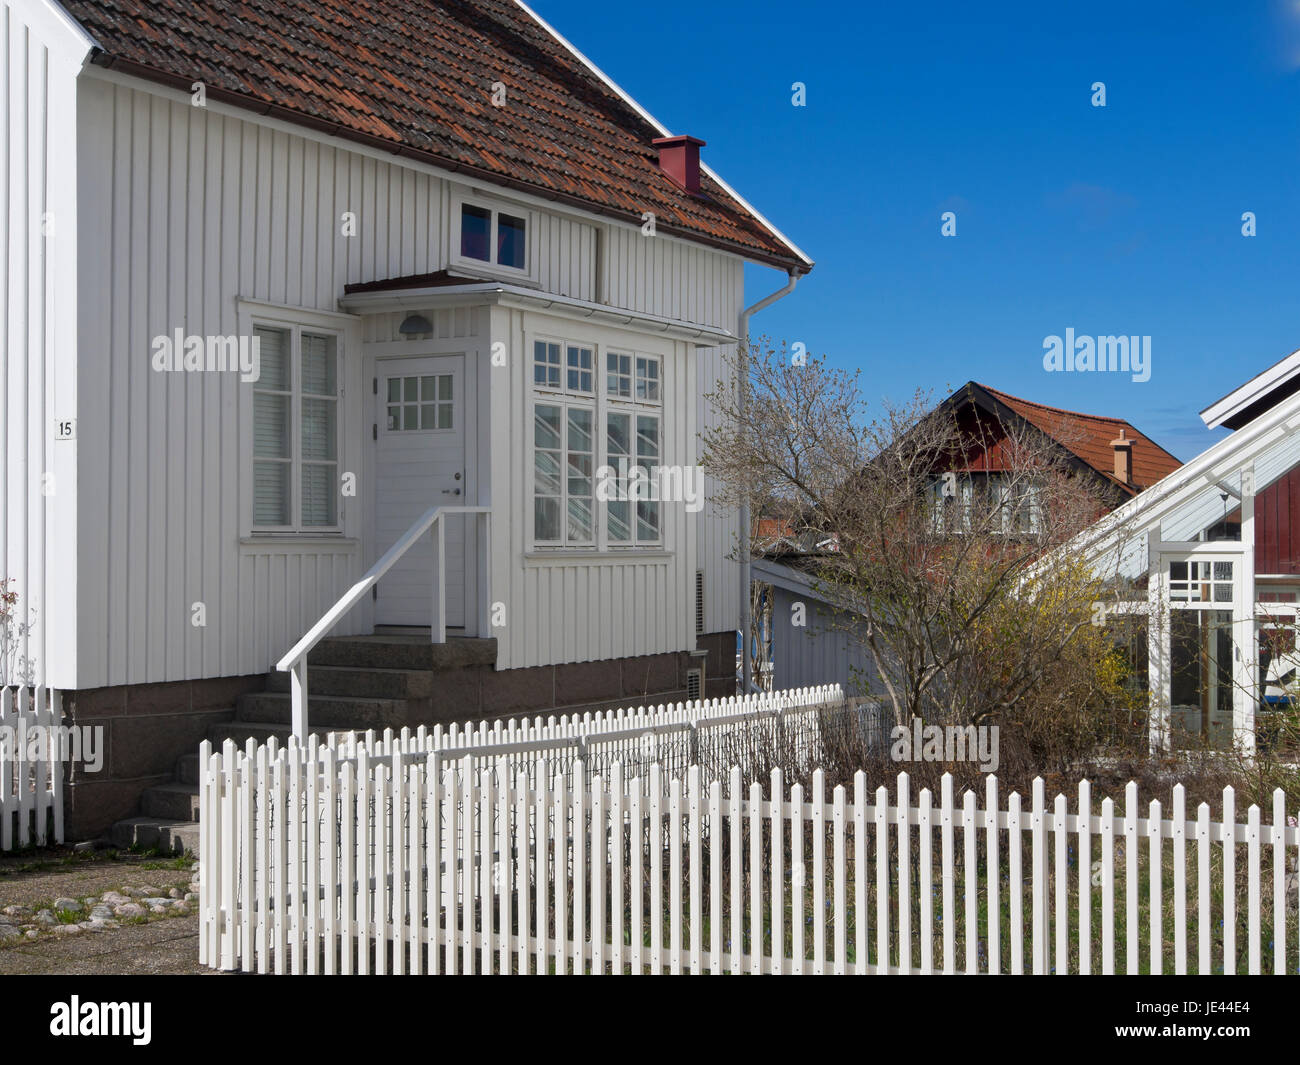 Die kleine Stadt von Fjällbacka an der Westküste von Schweden, ein Urlaubsziel, traditionellen Schindeln Villen Stockfoto